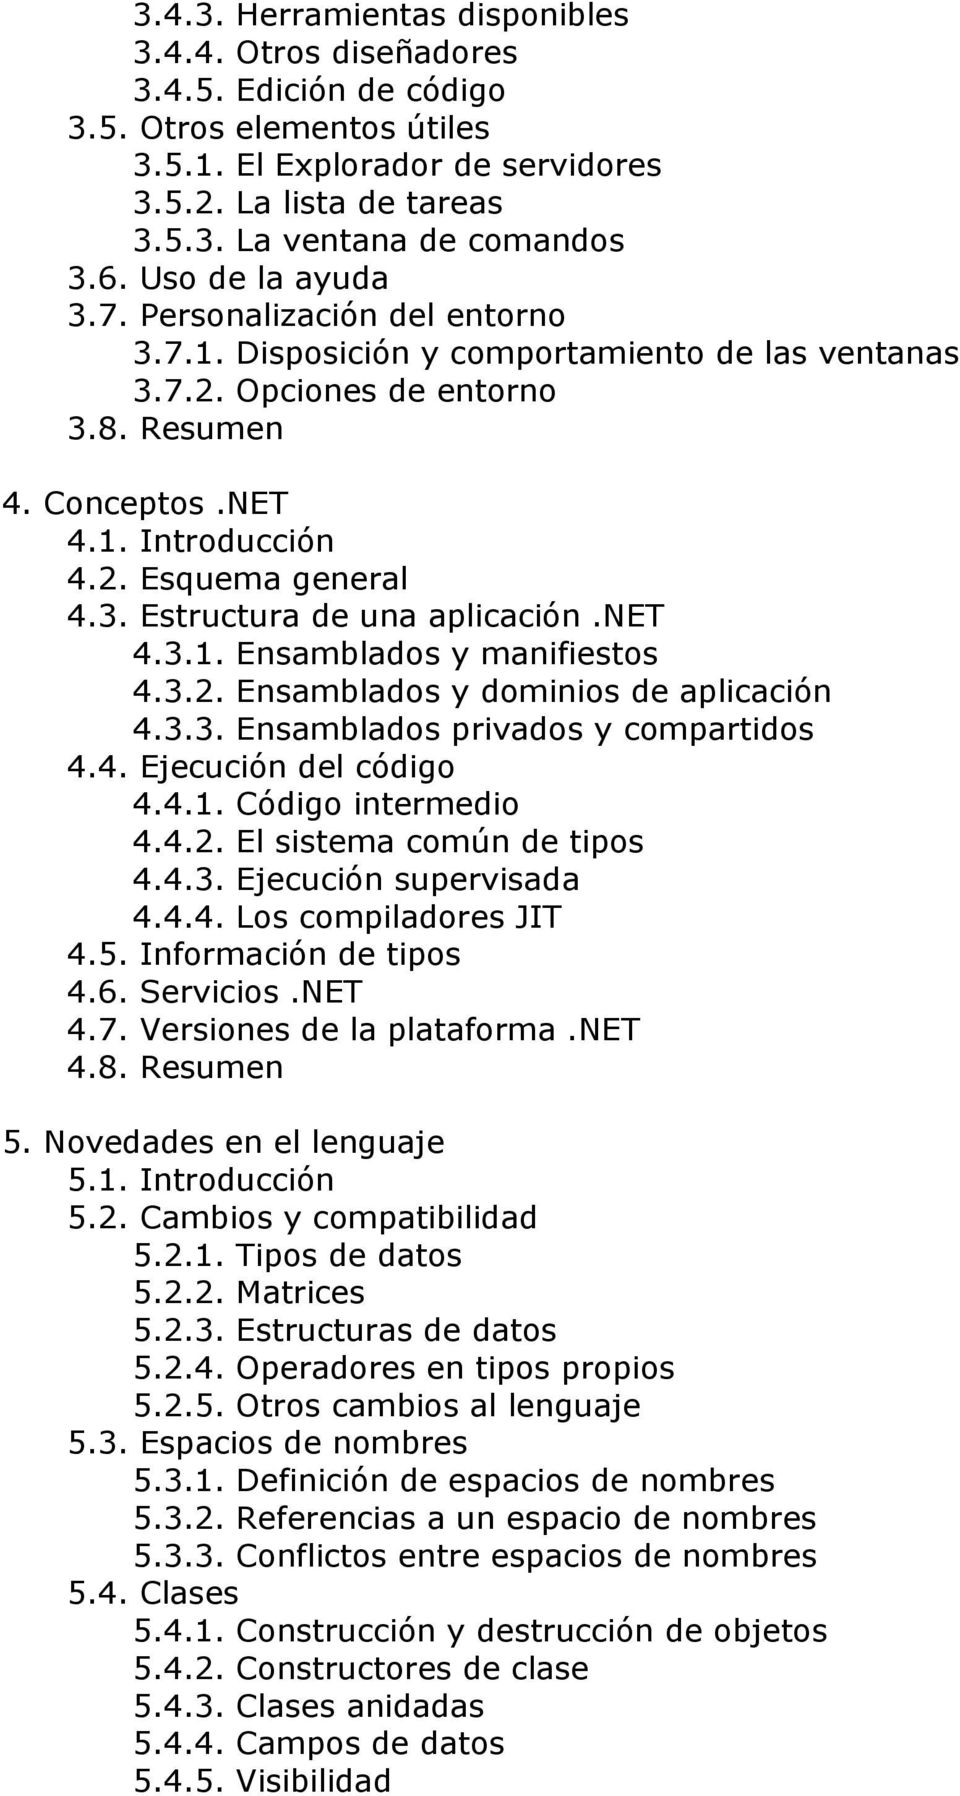 3. Estructura de una aplicación.net 4.3.1. Ensamblados y manifiestos 4.3.2. Ensamblados y dominios de aplicación 4.3.3. Ensamblados privados y compartidos 4.4. Ejecución del código 4.4.1. Código intermedio 4.